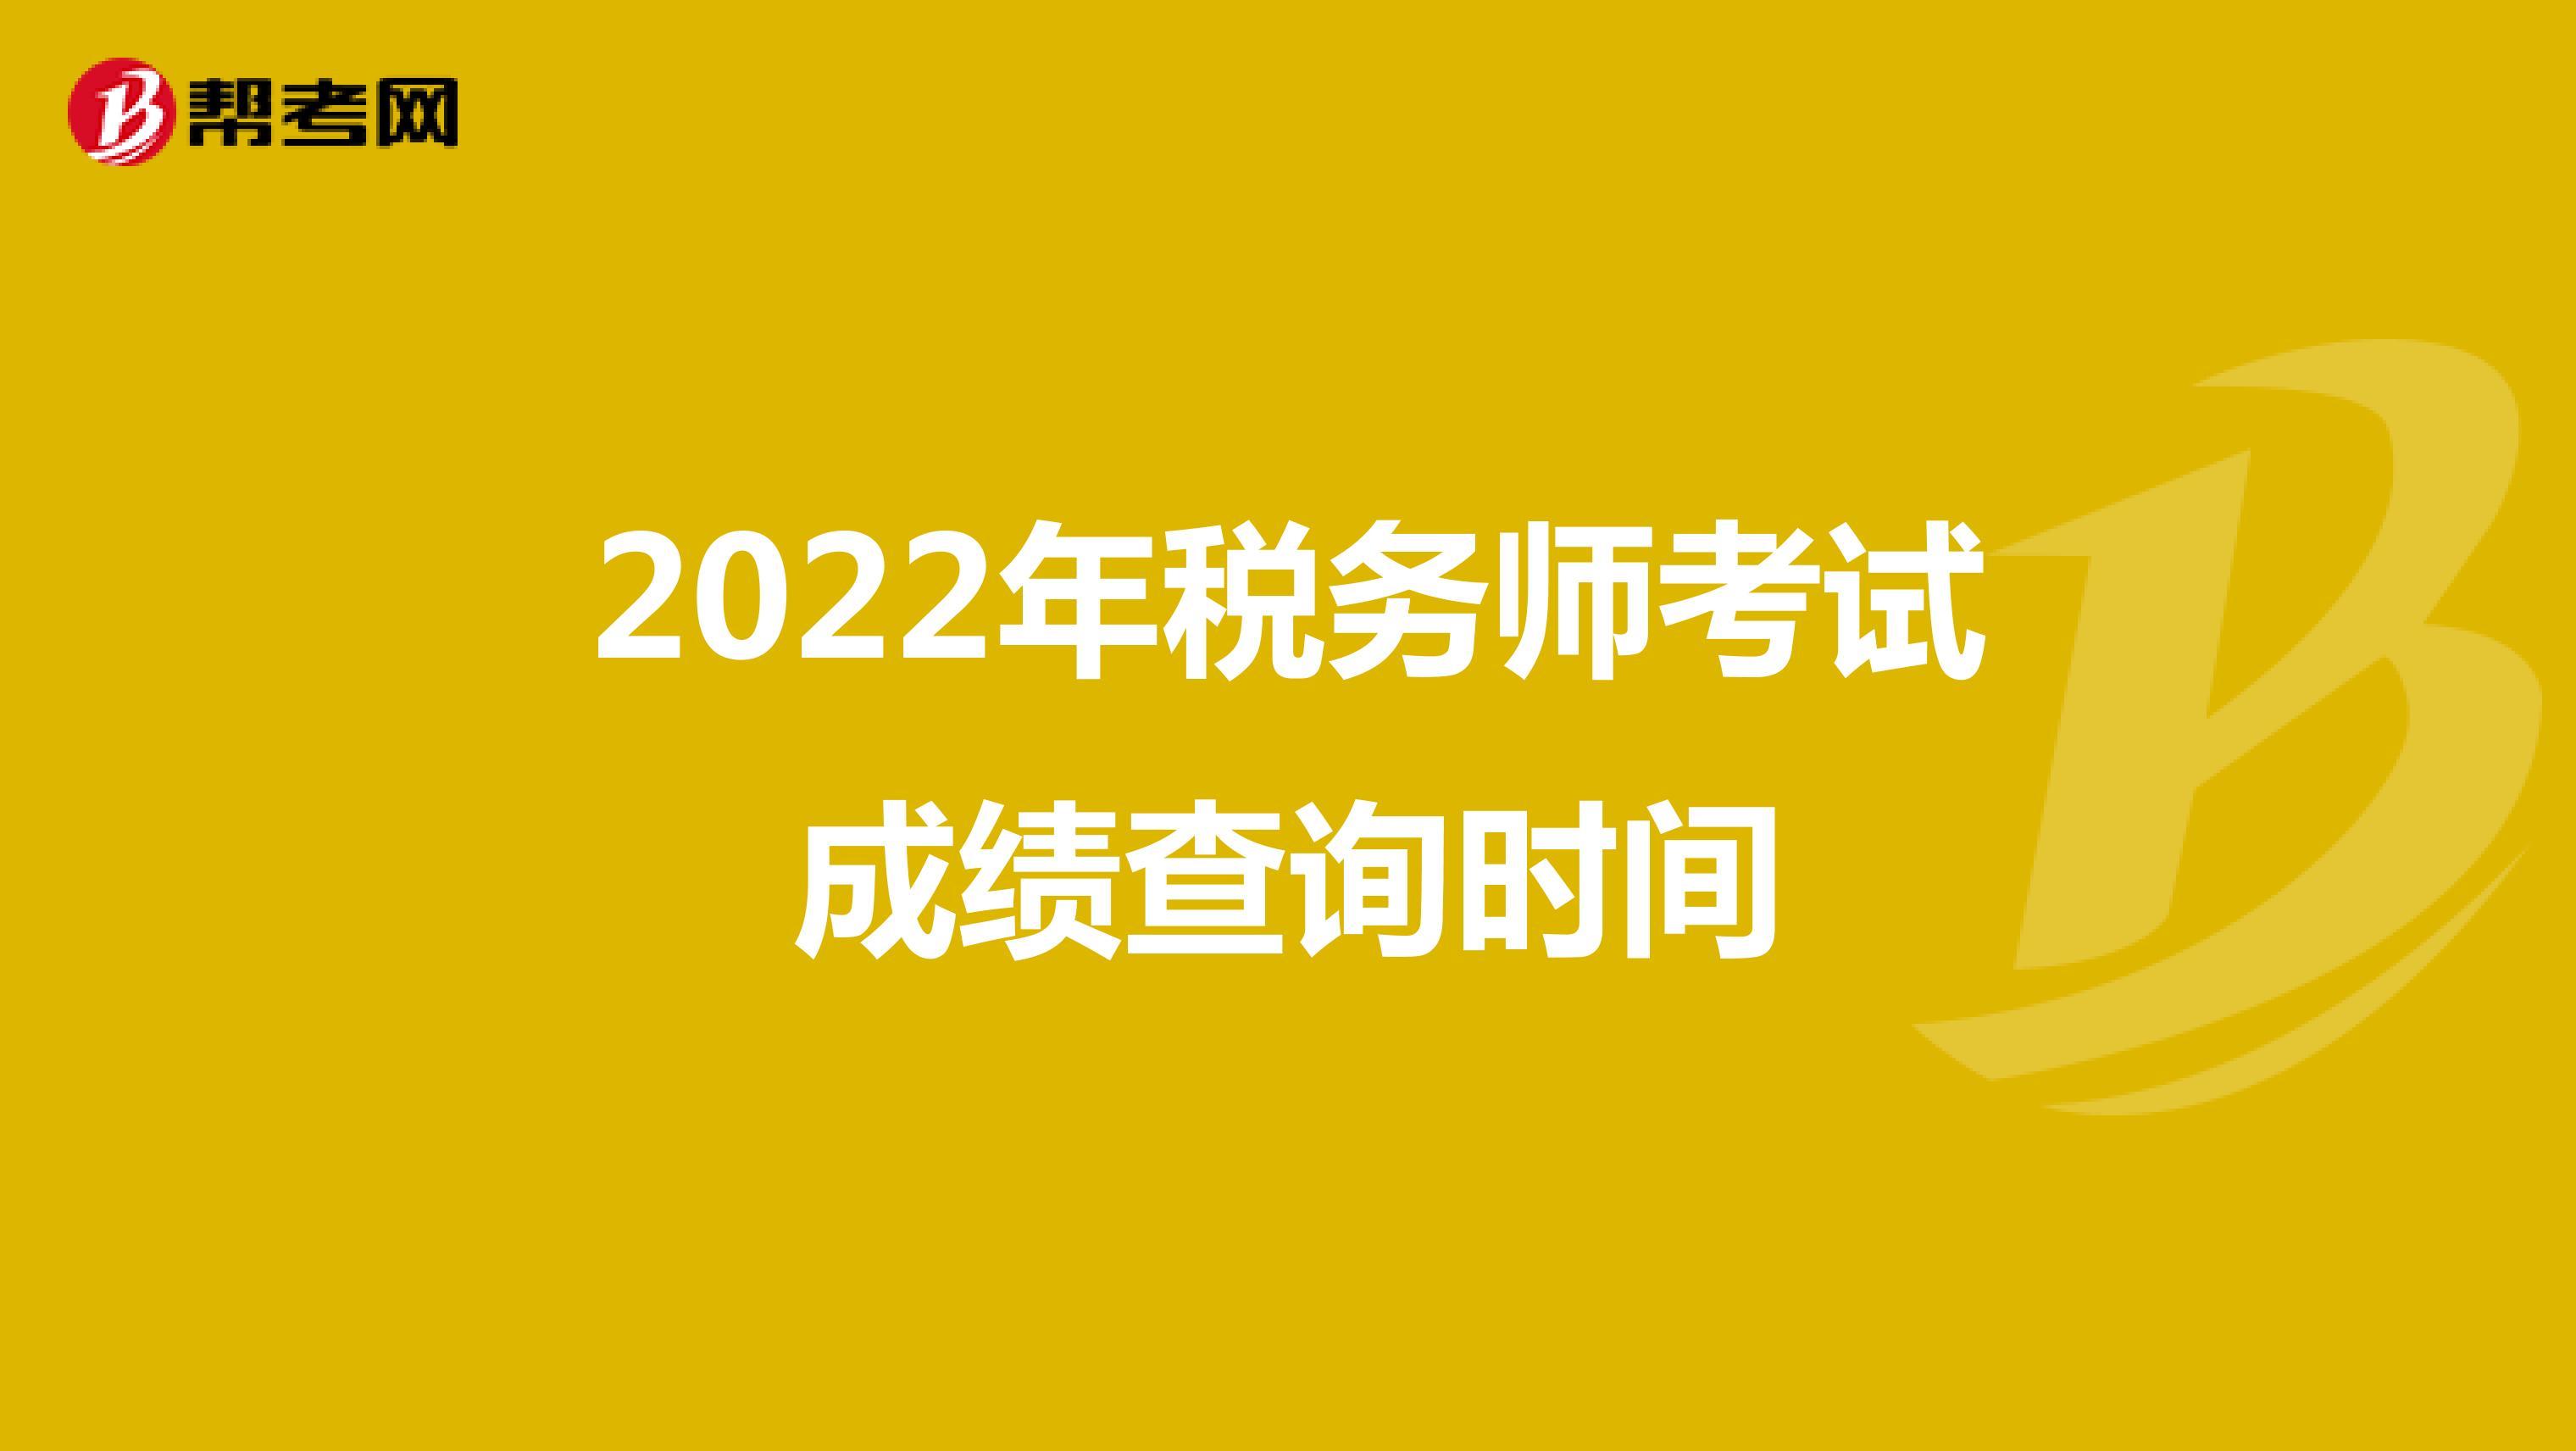 2022年税务师考试成绩查询时间